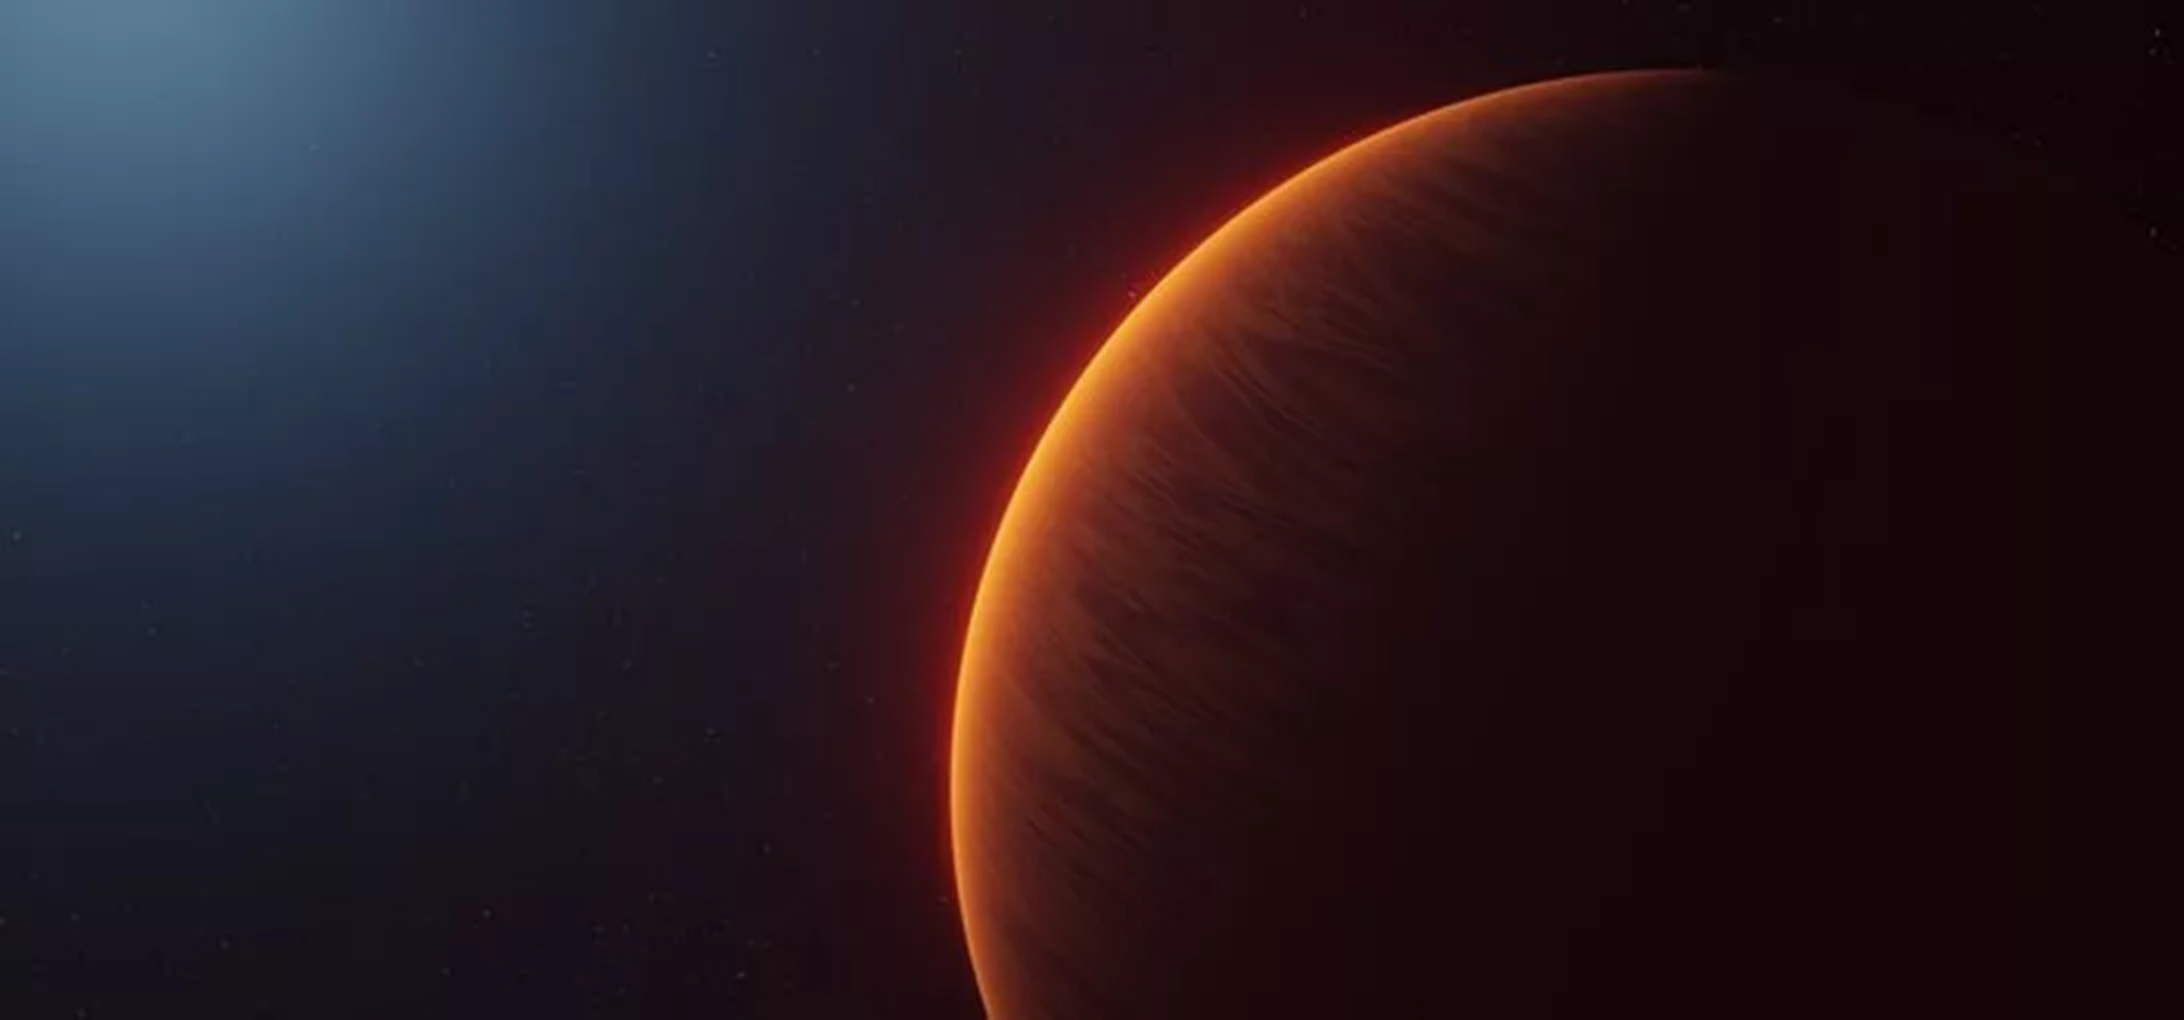 研究发现系外行星WASP-189b可能跟地球一样有臭氧层